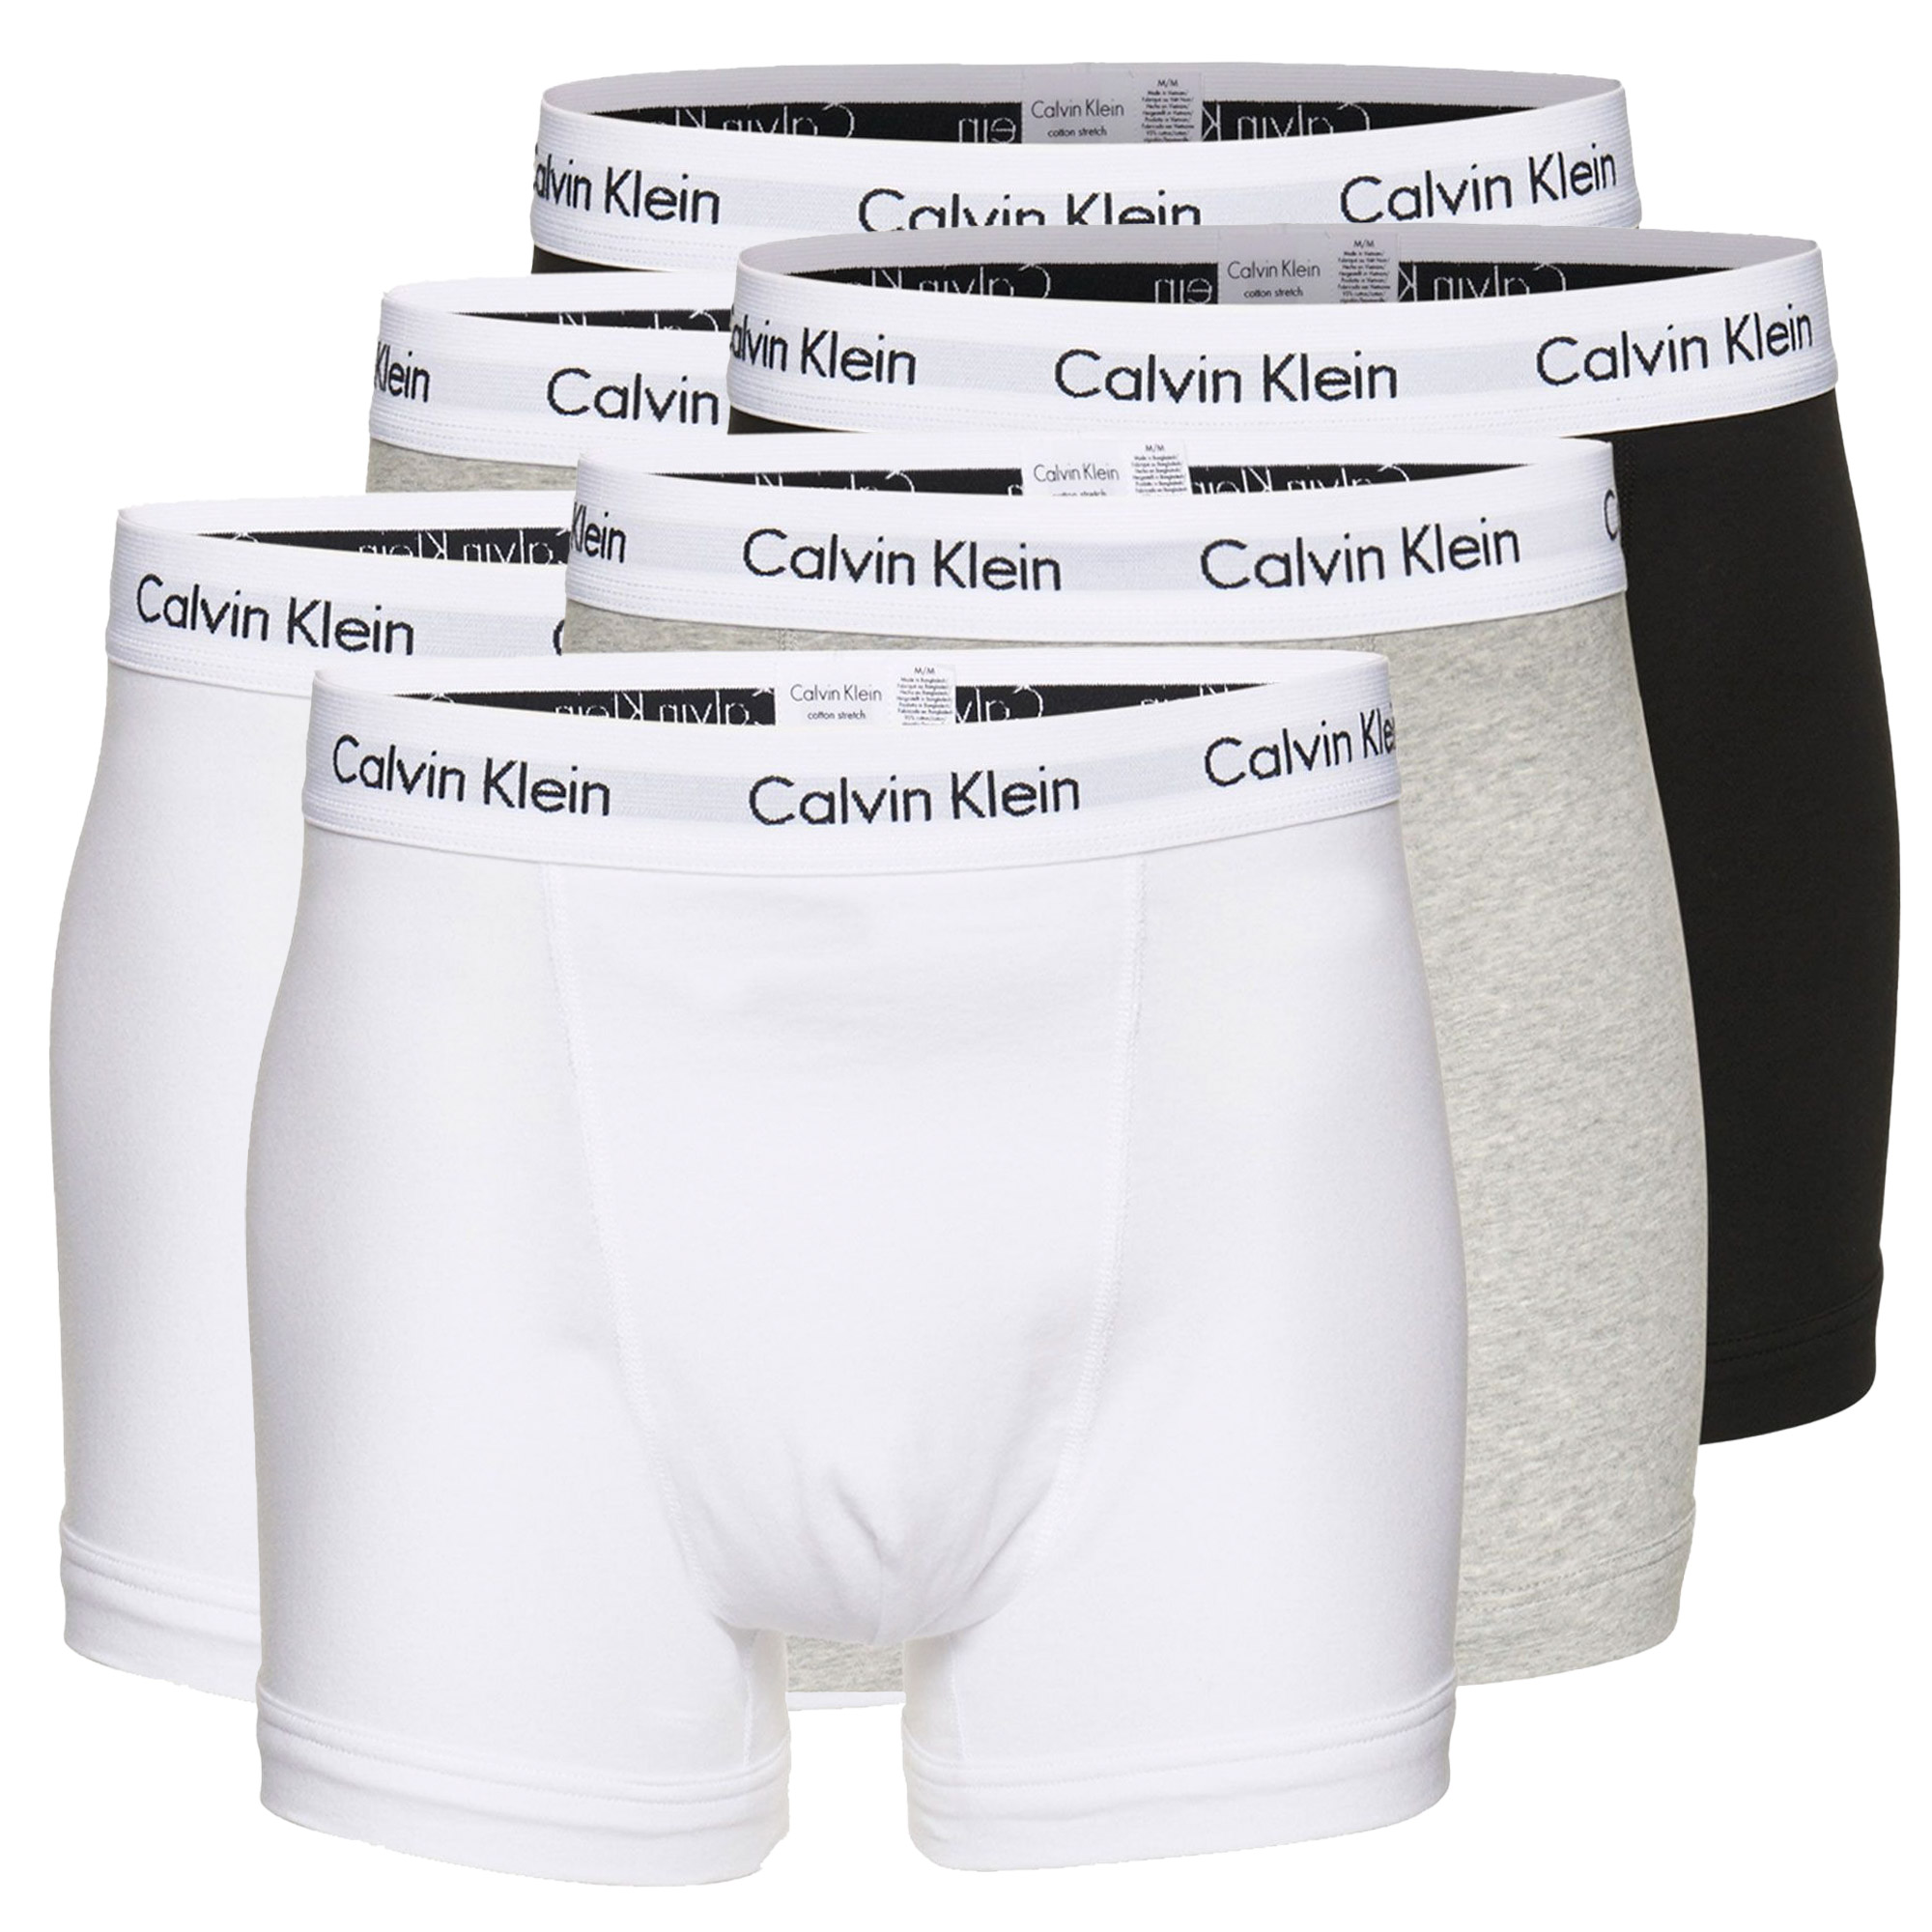 Boxer-shorts Calvin Klein Trunk Hommes (Lot de 6)